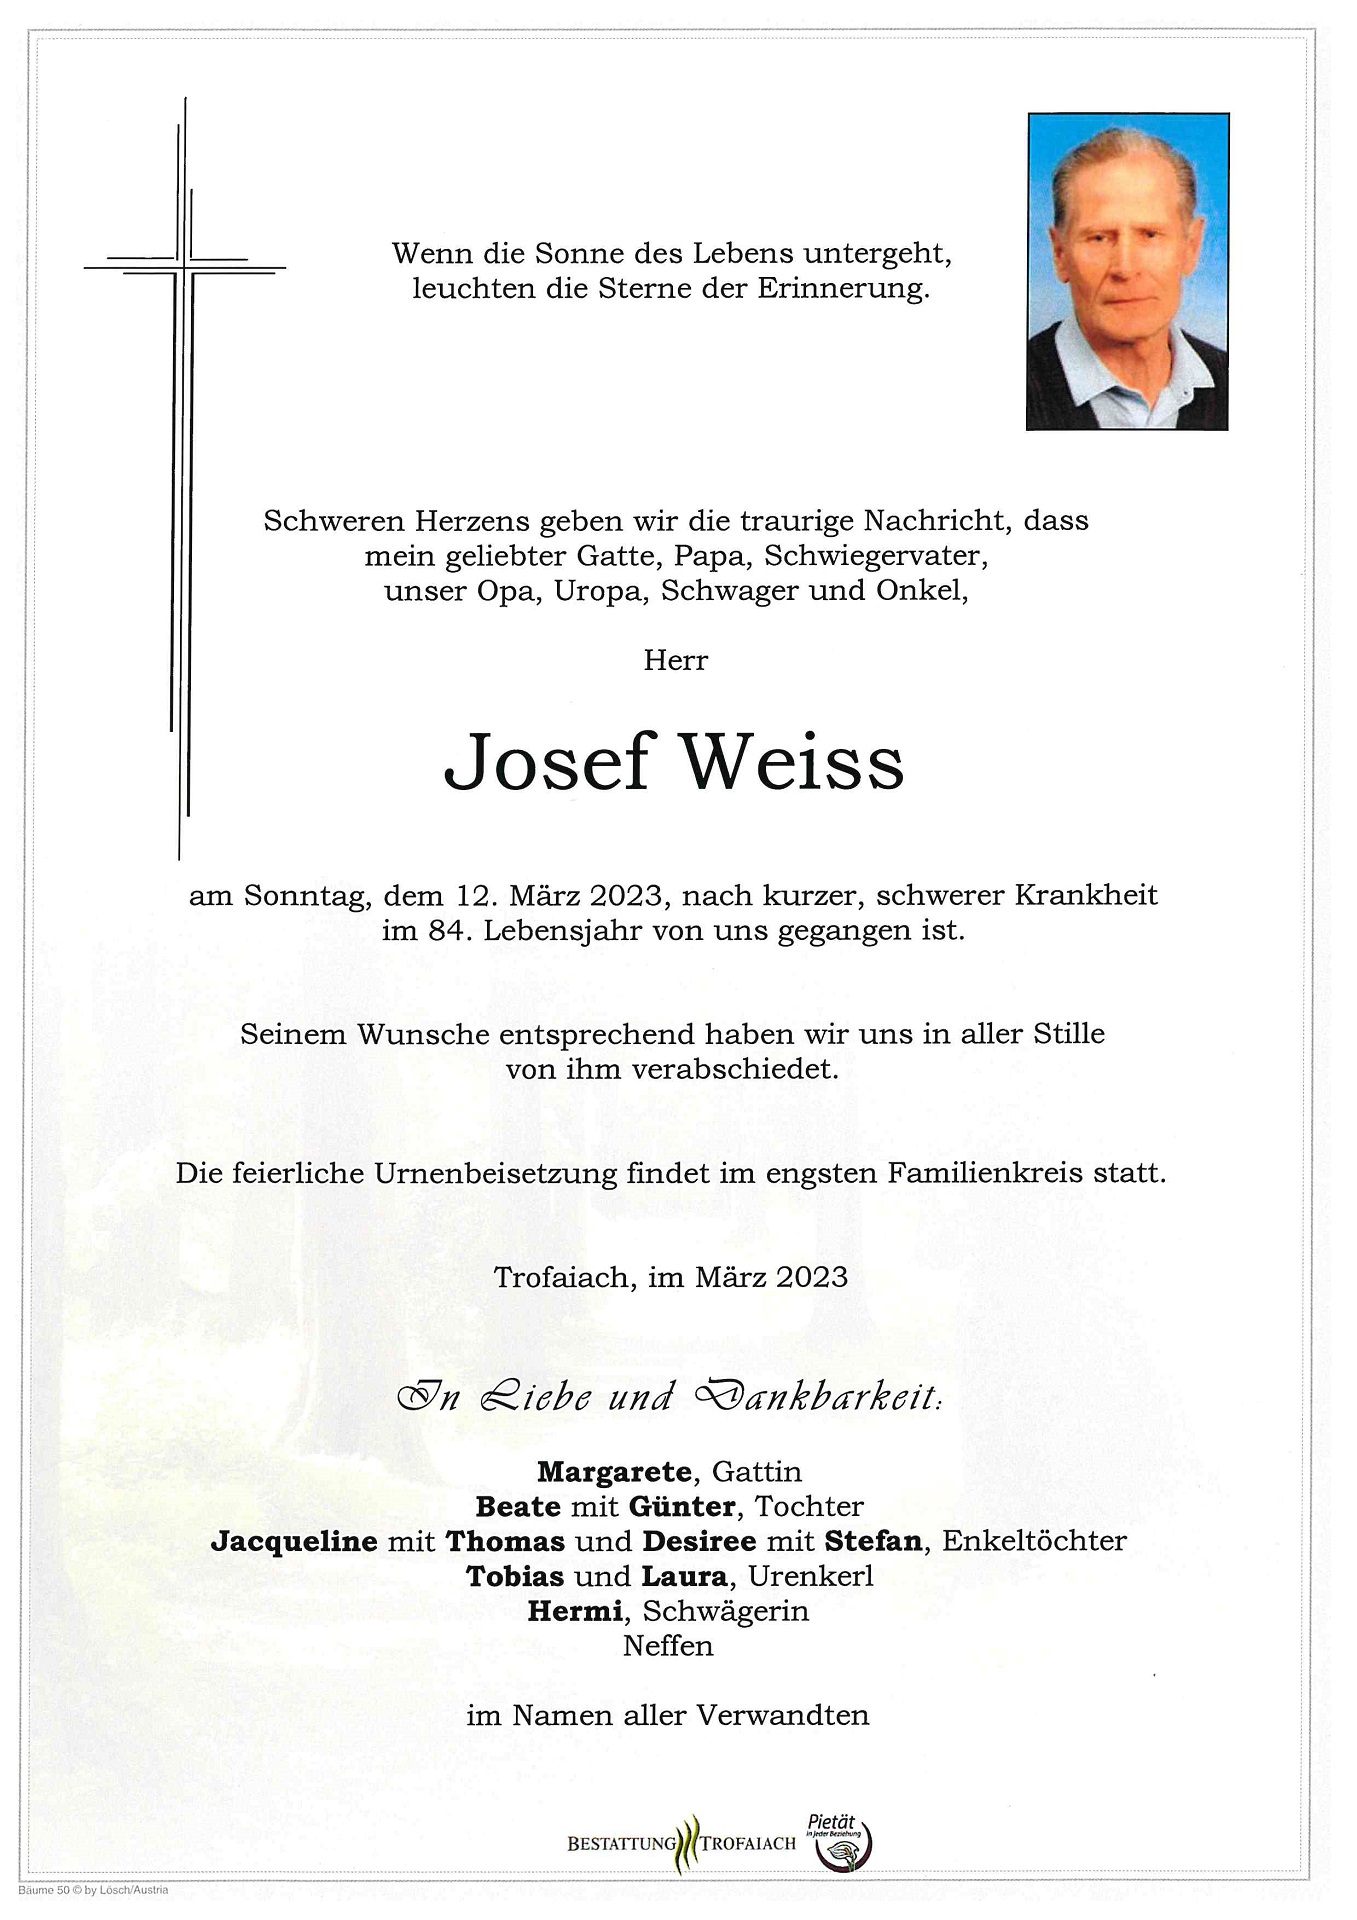 Weiss Josef